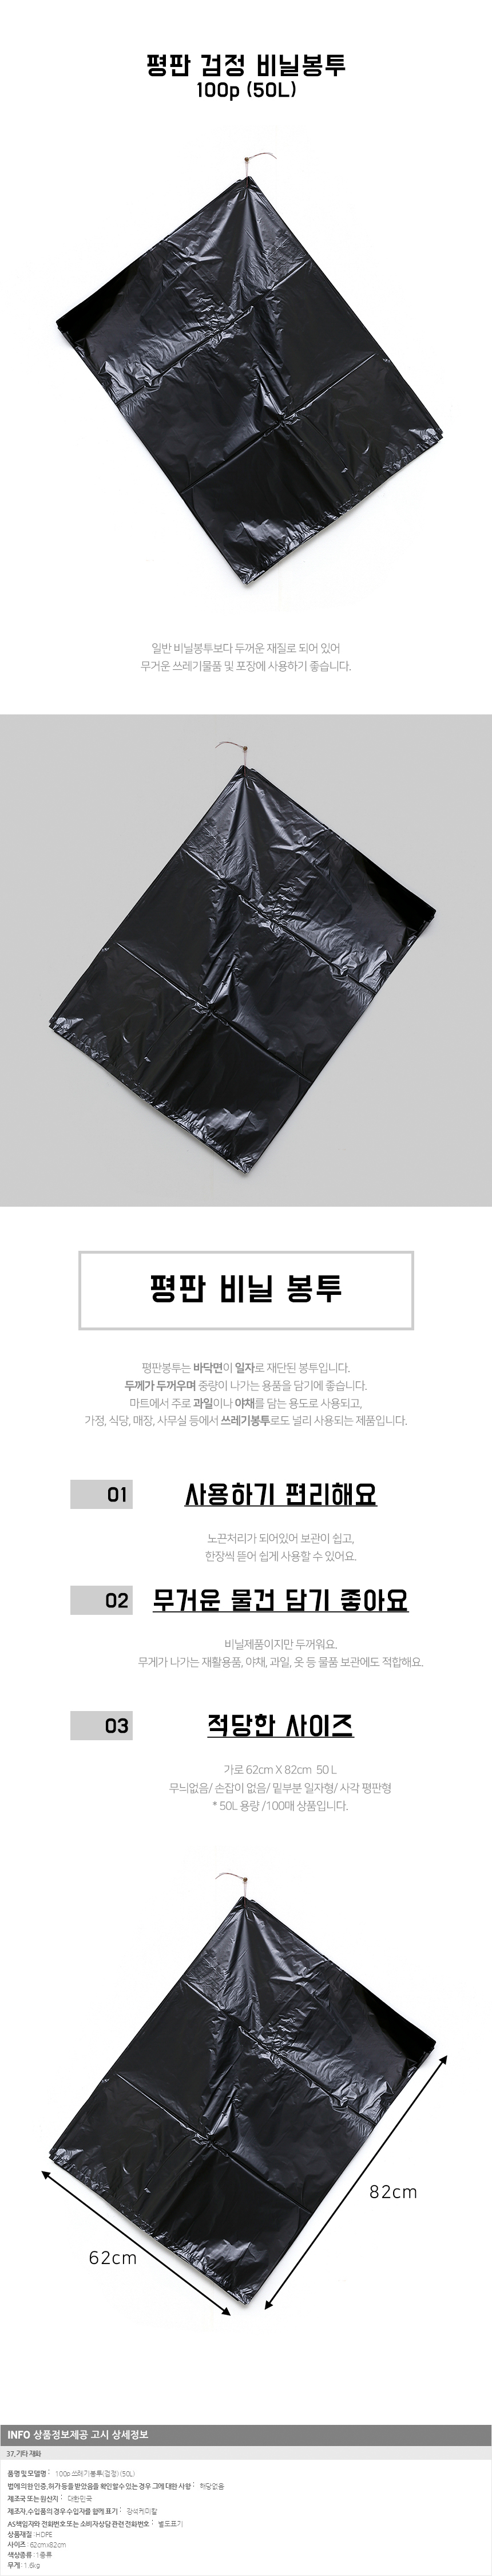 50L 쓰레기봉투 검정 100매/ 재활용 분리수거비닐봉투